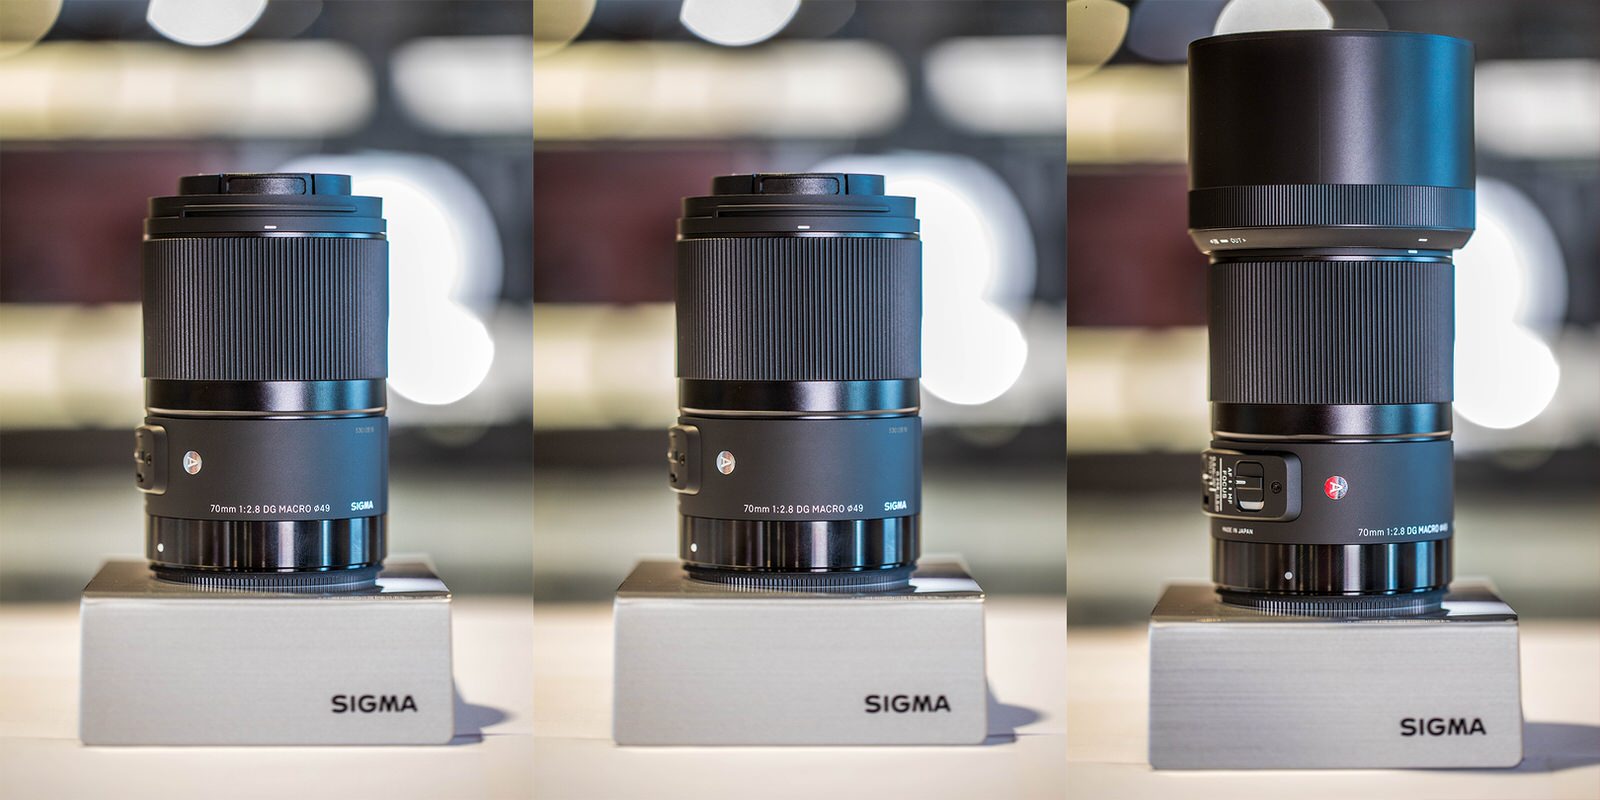 Sigma 70mm f 2.8 macro. Sigma 70mm f2.8 DG macro. Sigma 70mm f/2.8 DG macro Art Canon EF. Sigma 70mm 2,8. 70mm f2.8 DG macro.